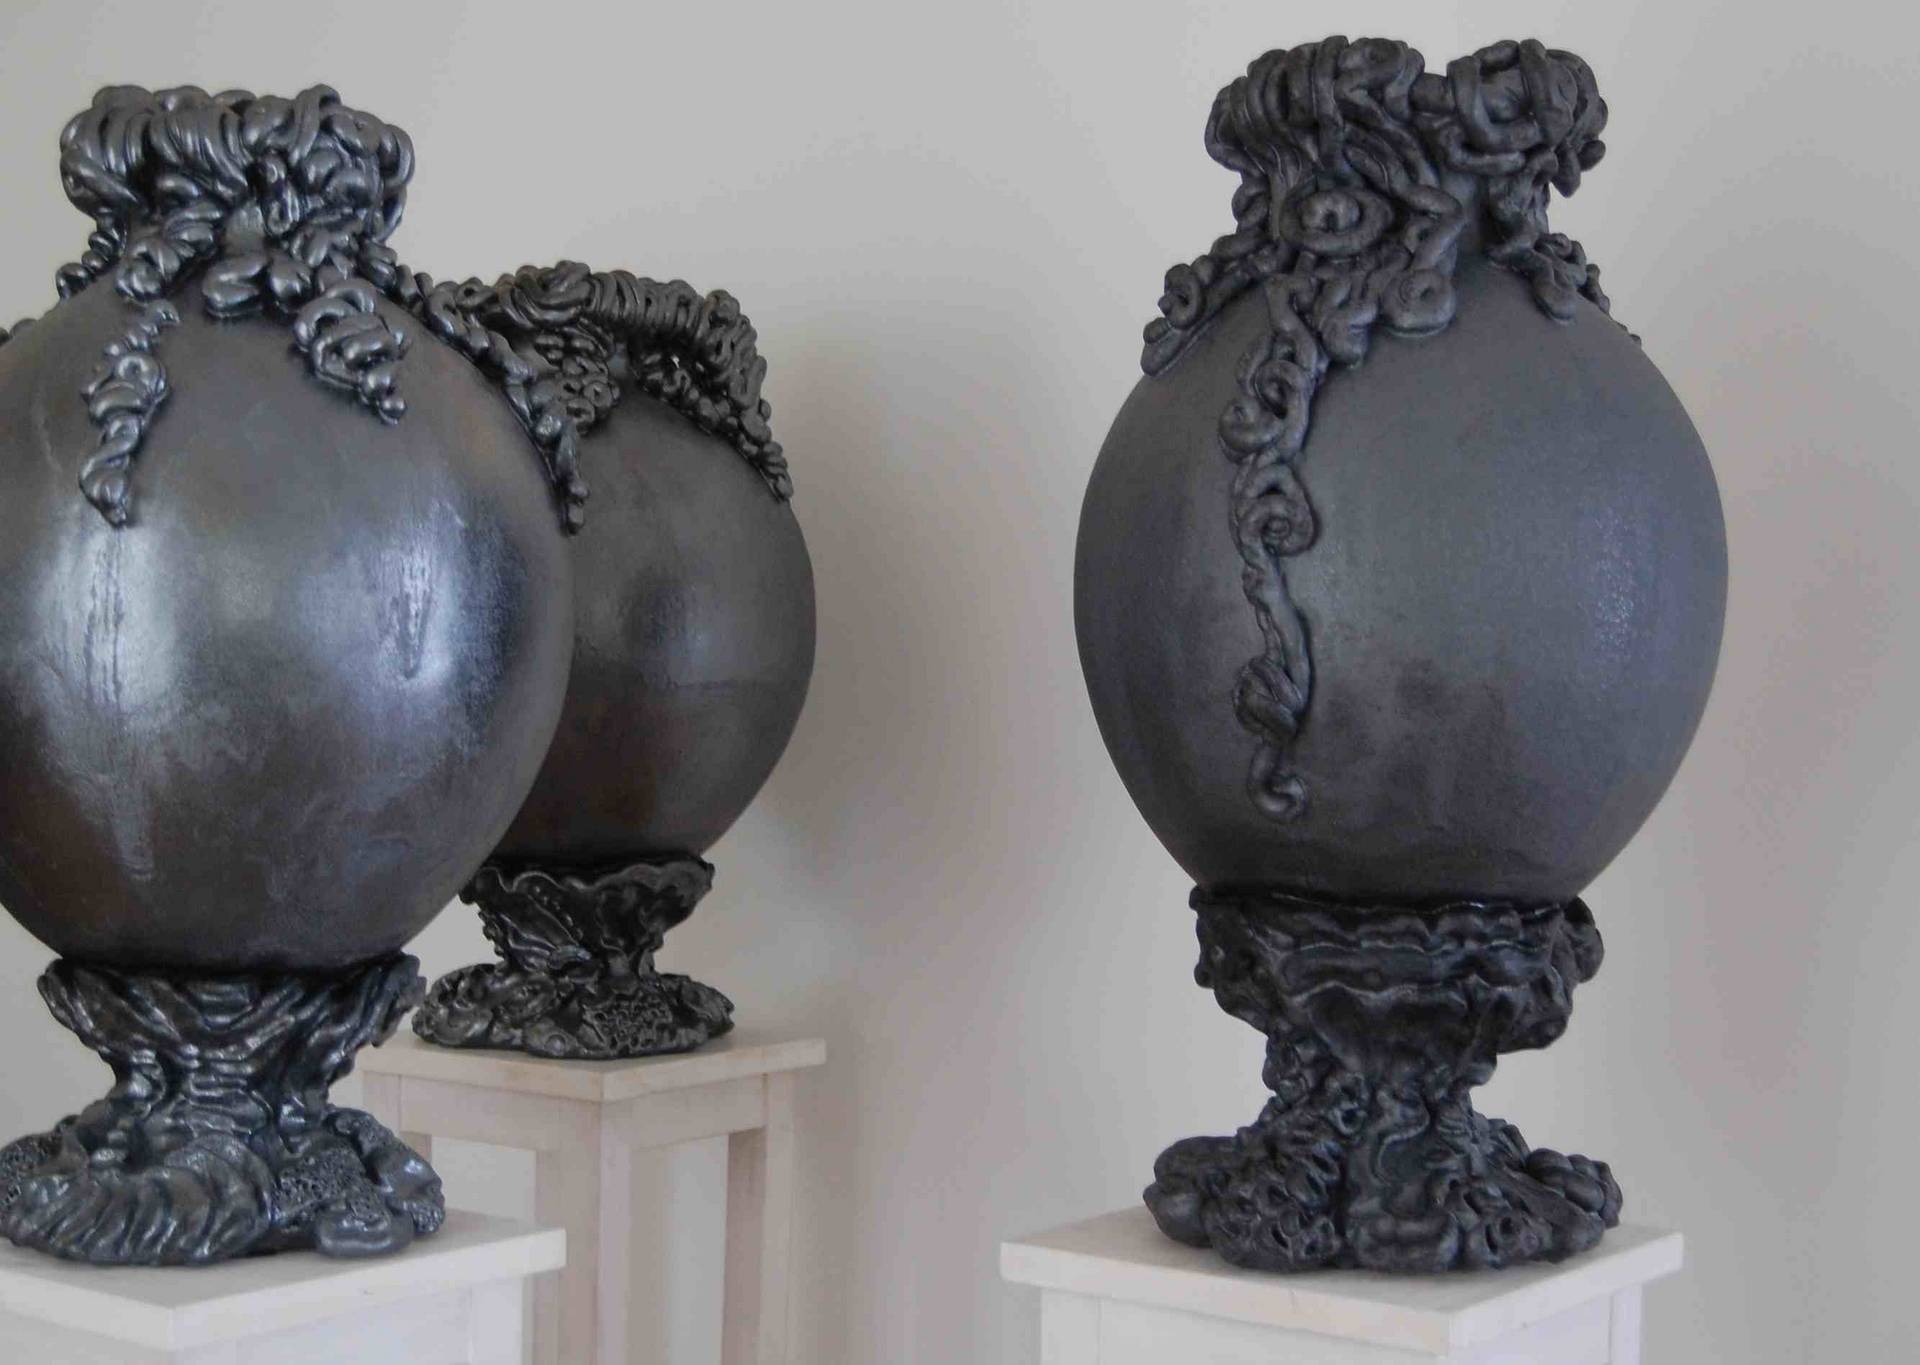 Gerold Tusch (geb. 1969), 3 Gorgonen-Vasen, 2008-2009, Keramik glasiert, Ankauf bei Galerie Steinek, Wien